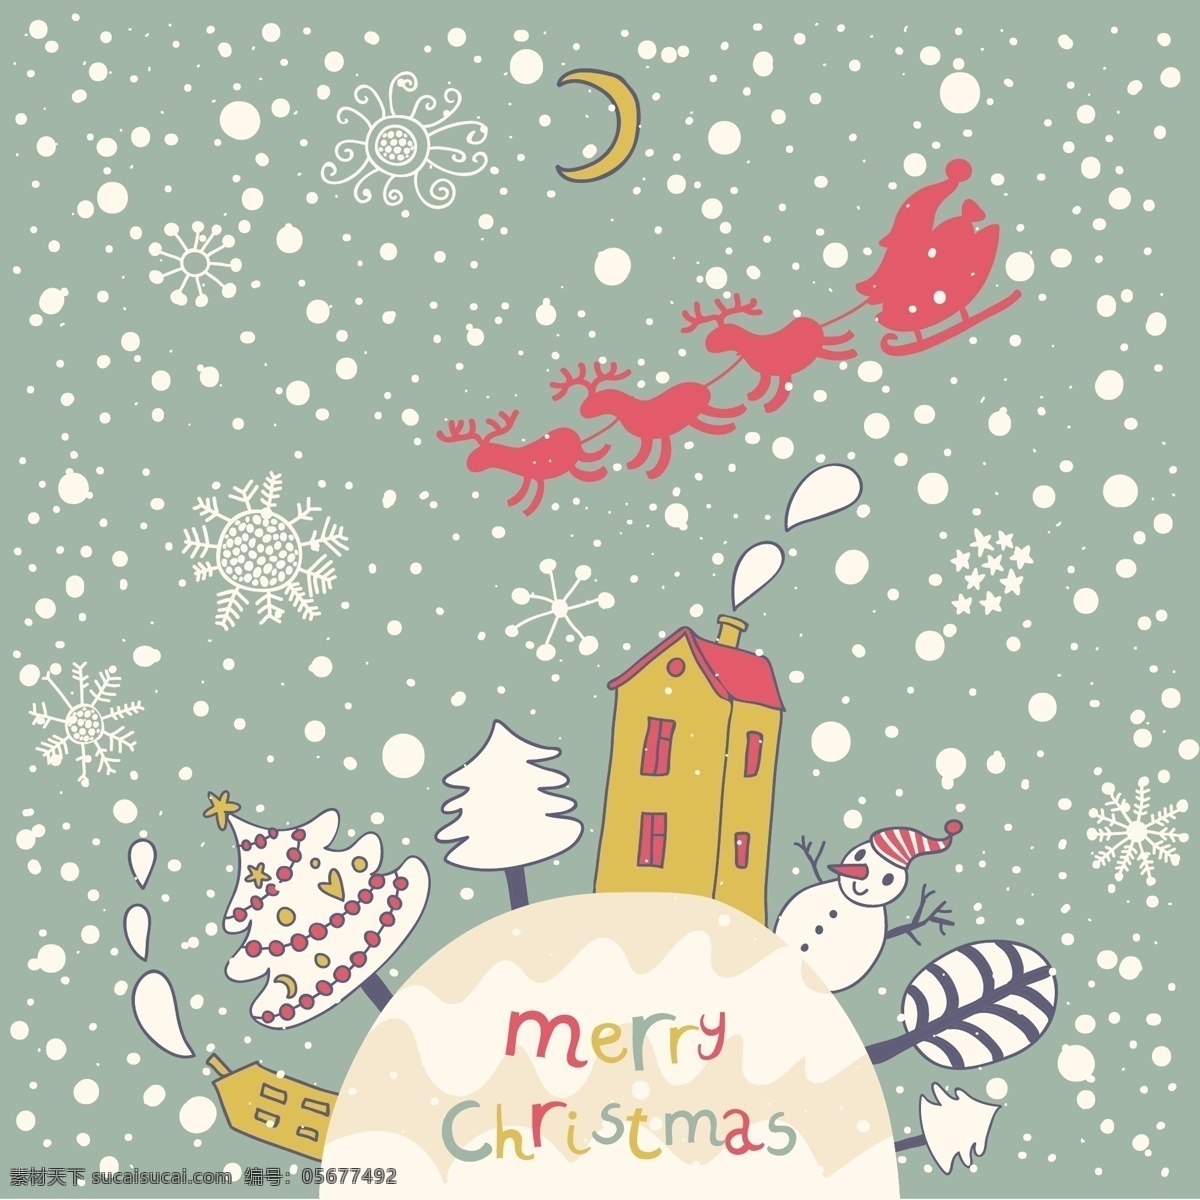 卡通 圣诞卡 矢量 房子 卡 可爱的 轮廓 麋鹿 圣诞树 手绘 松树 星星 烟囱 装饰 月亮 圣克劳斯 雪 雪人 矢量图 矢量人物